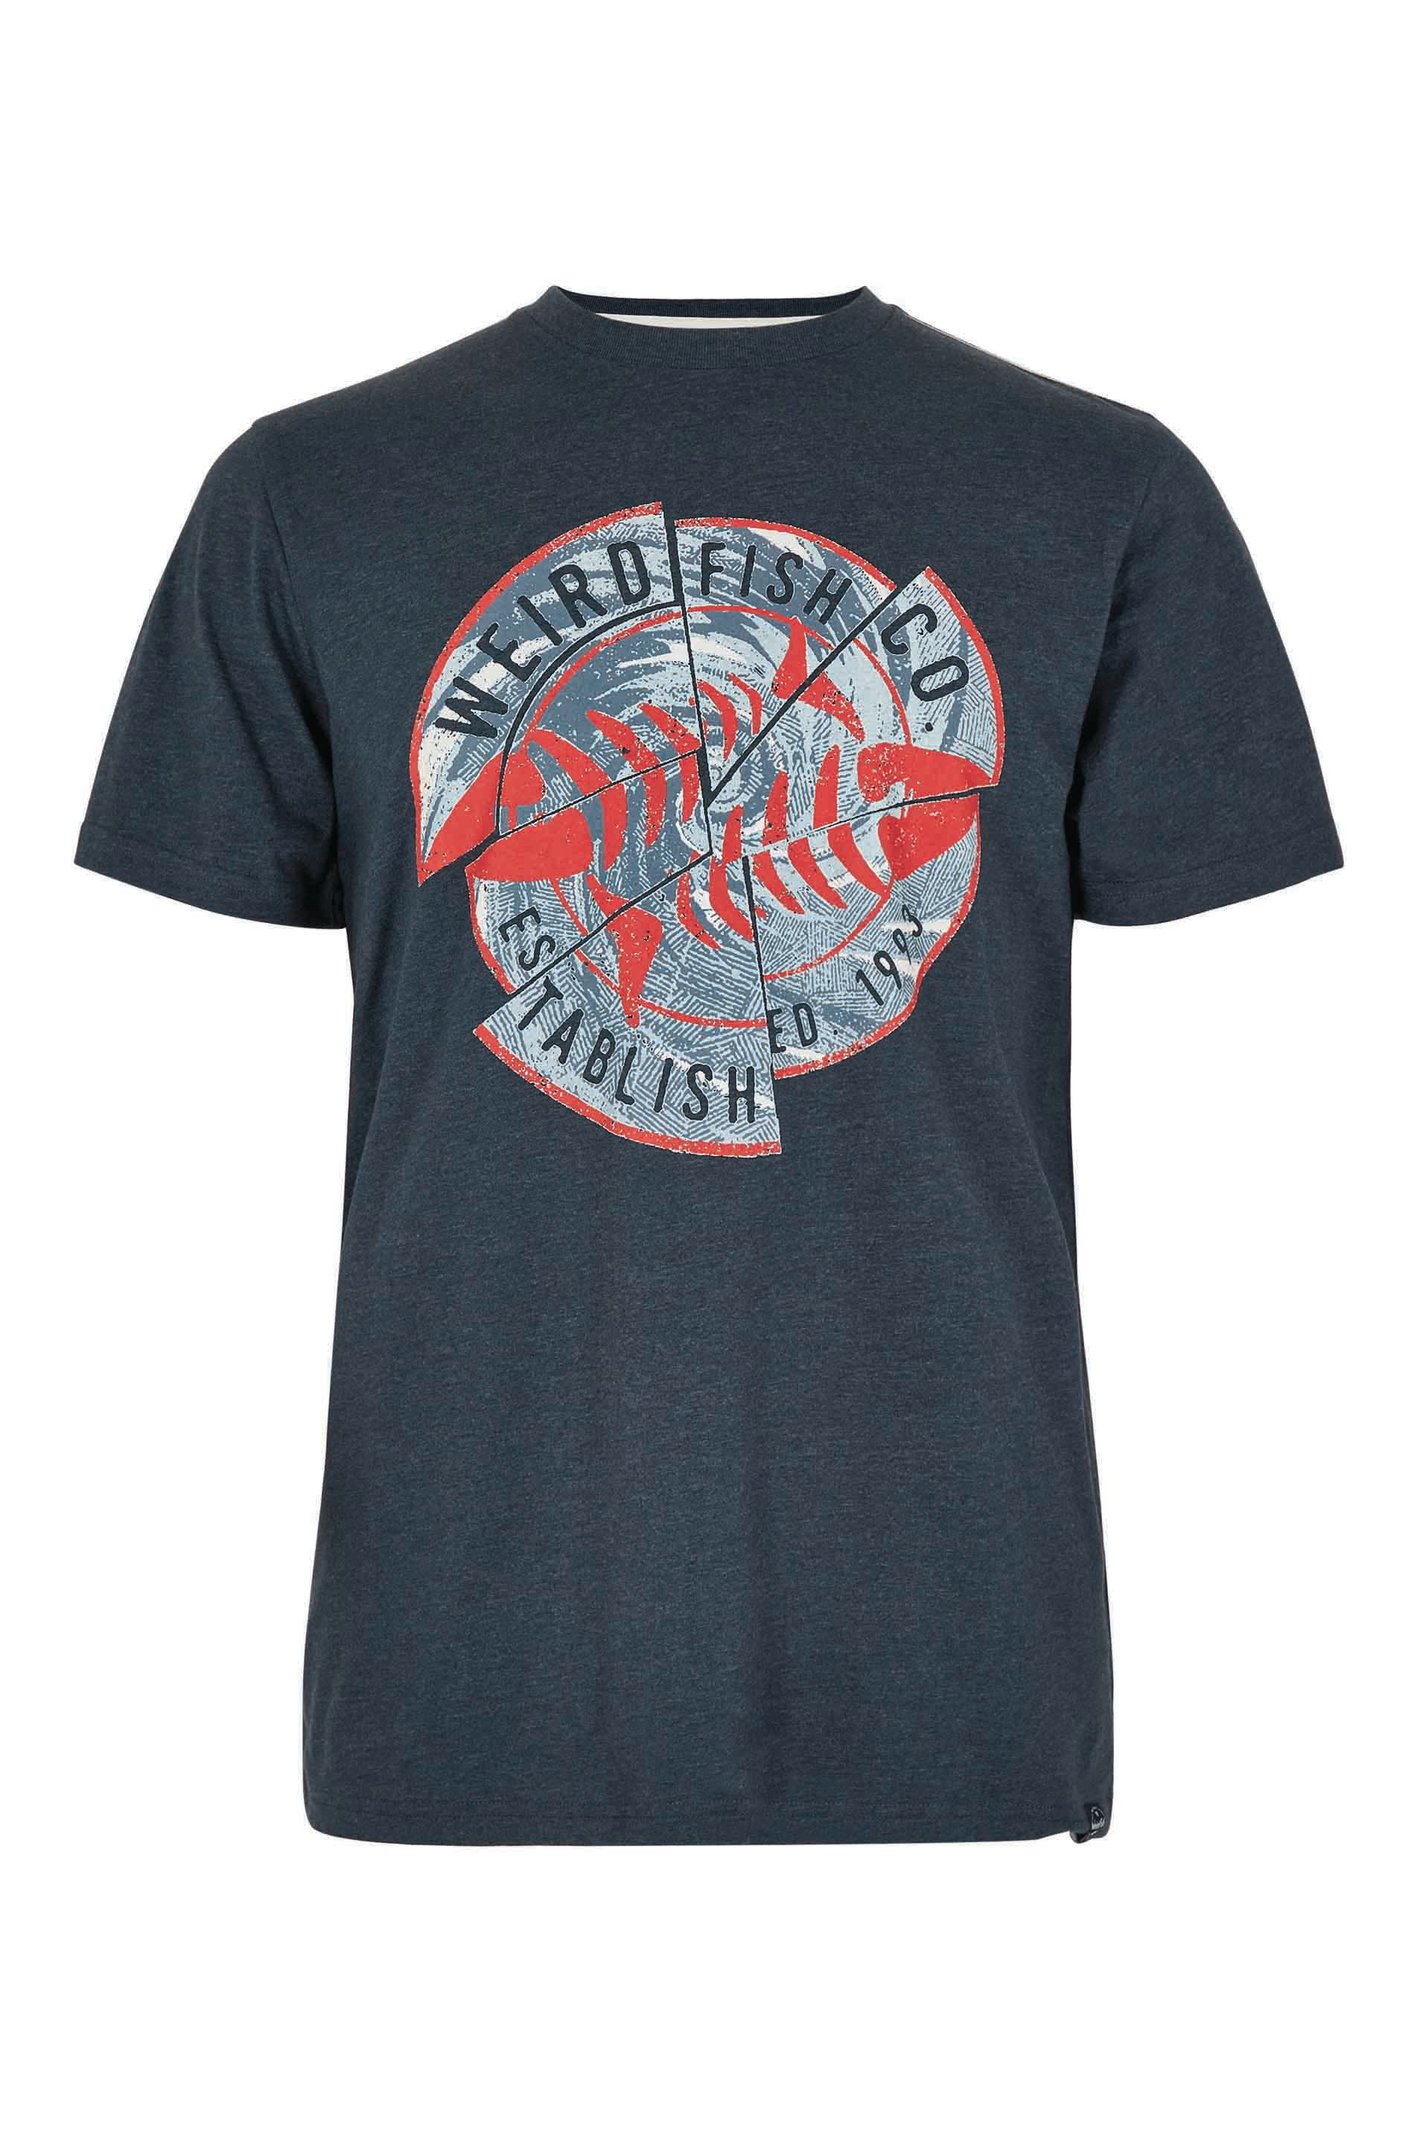 Weird Fish Vortex Eco Graphic T-Shirt Navy Size M